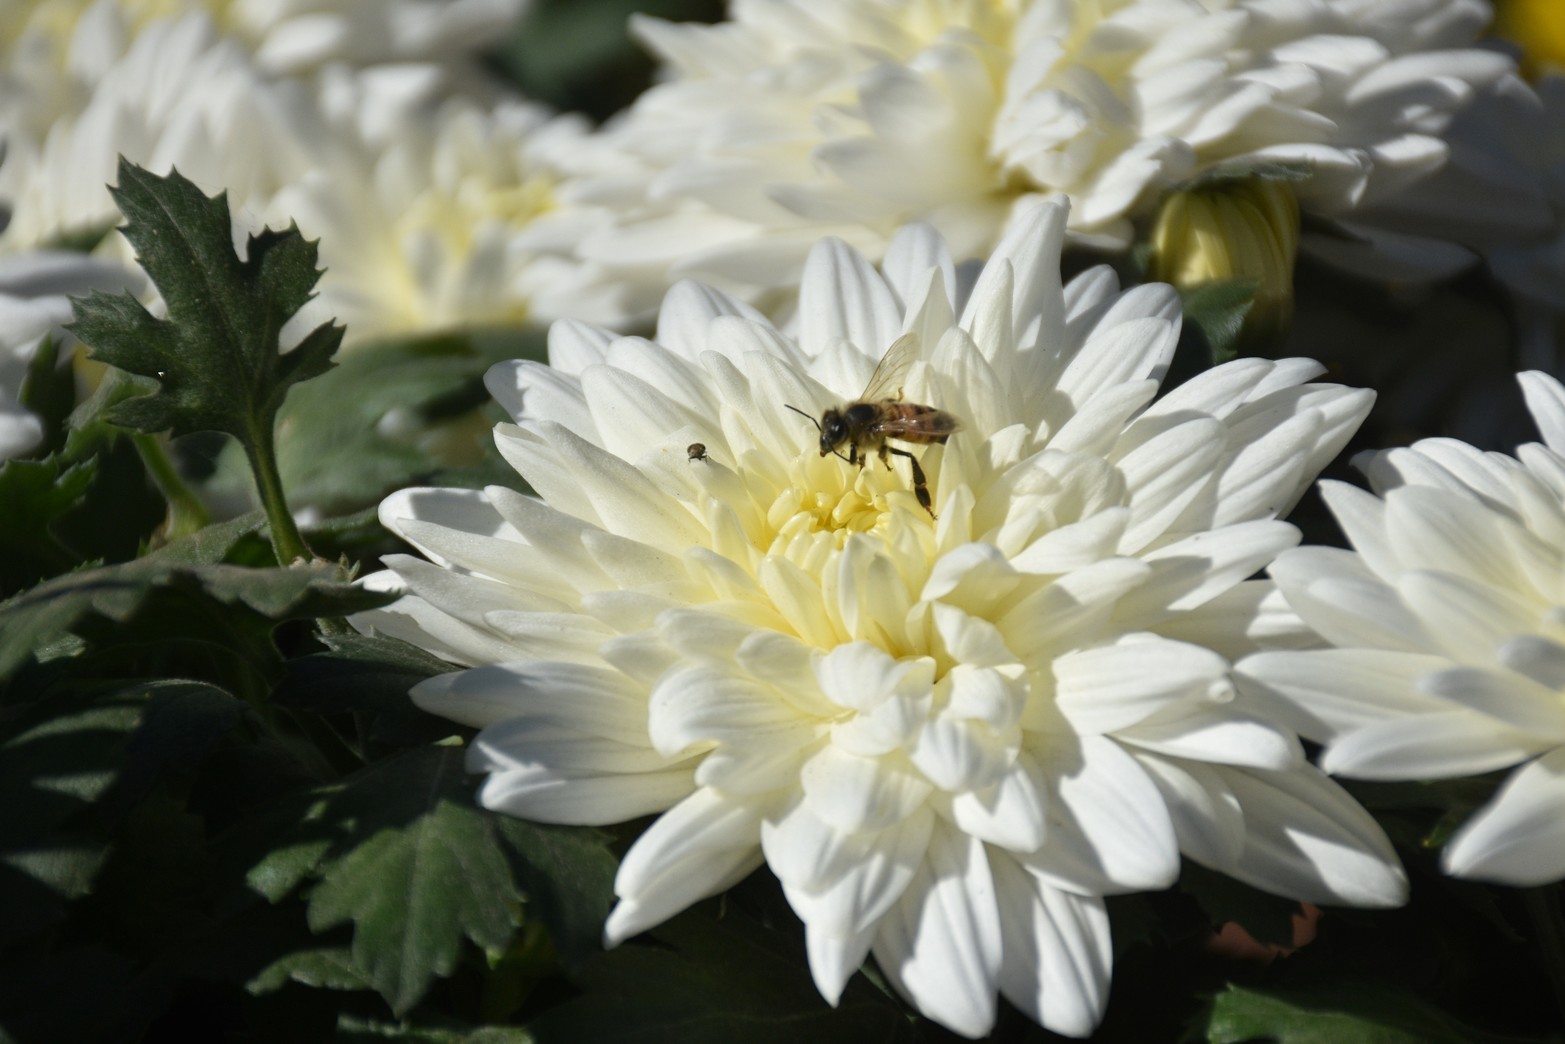 Una abeja posa sobre una flor de crisantemo.  Flavio Raina